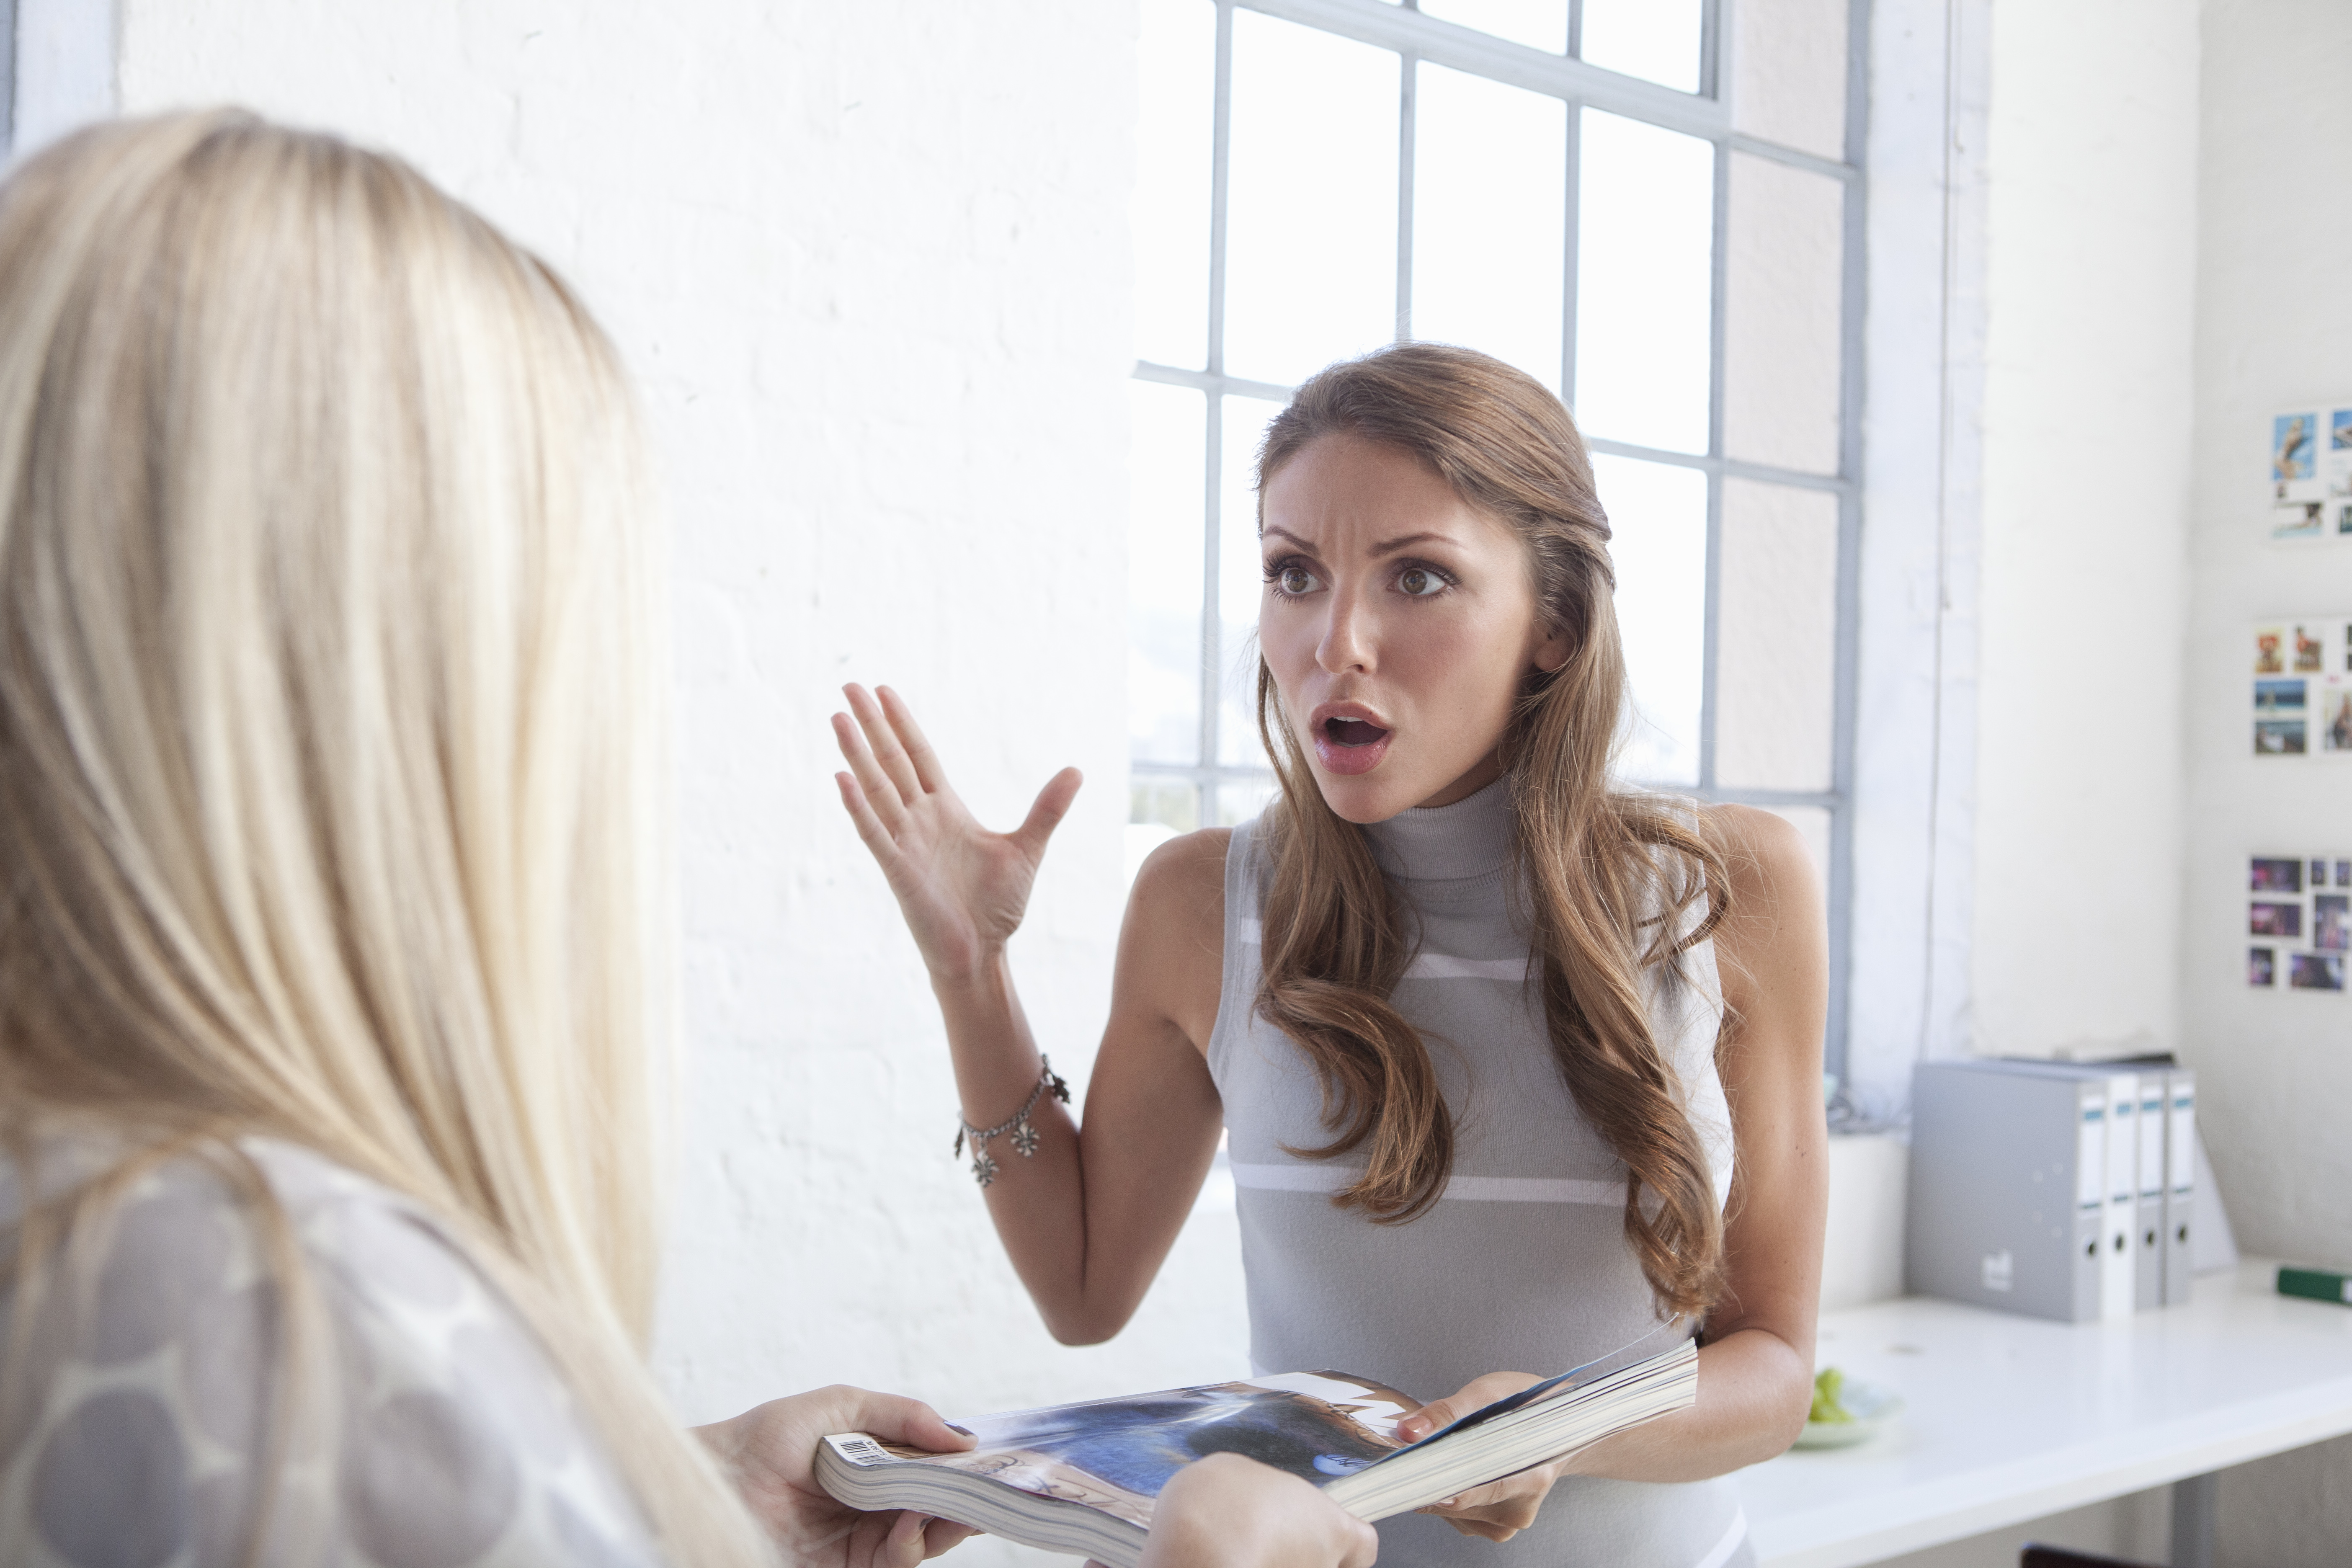 Una mujer se escandaliza mientras habla con otra mujer | Getty Images